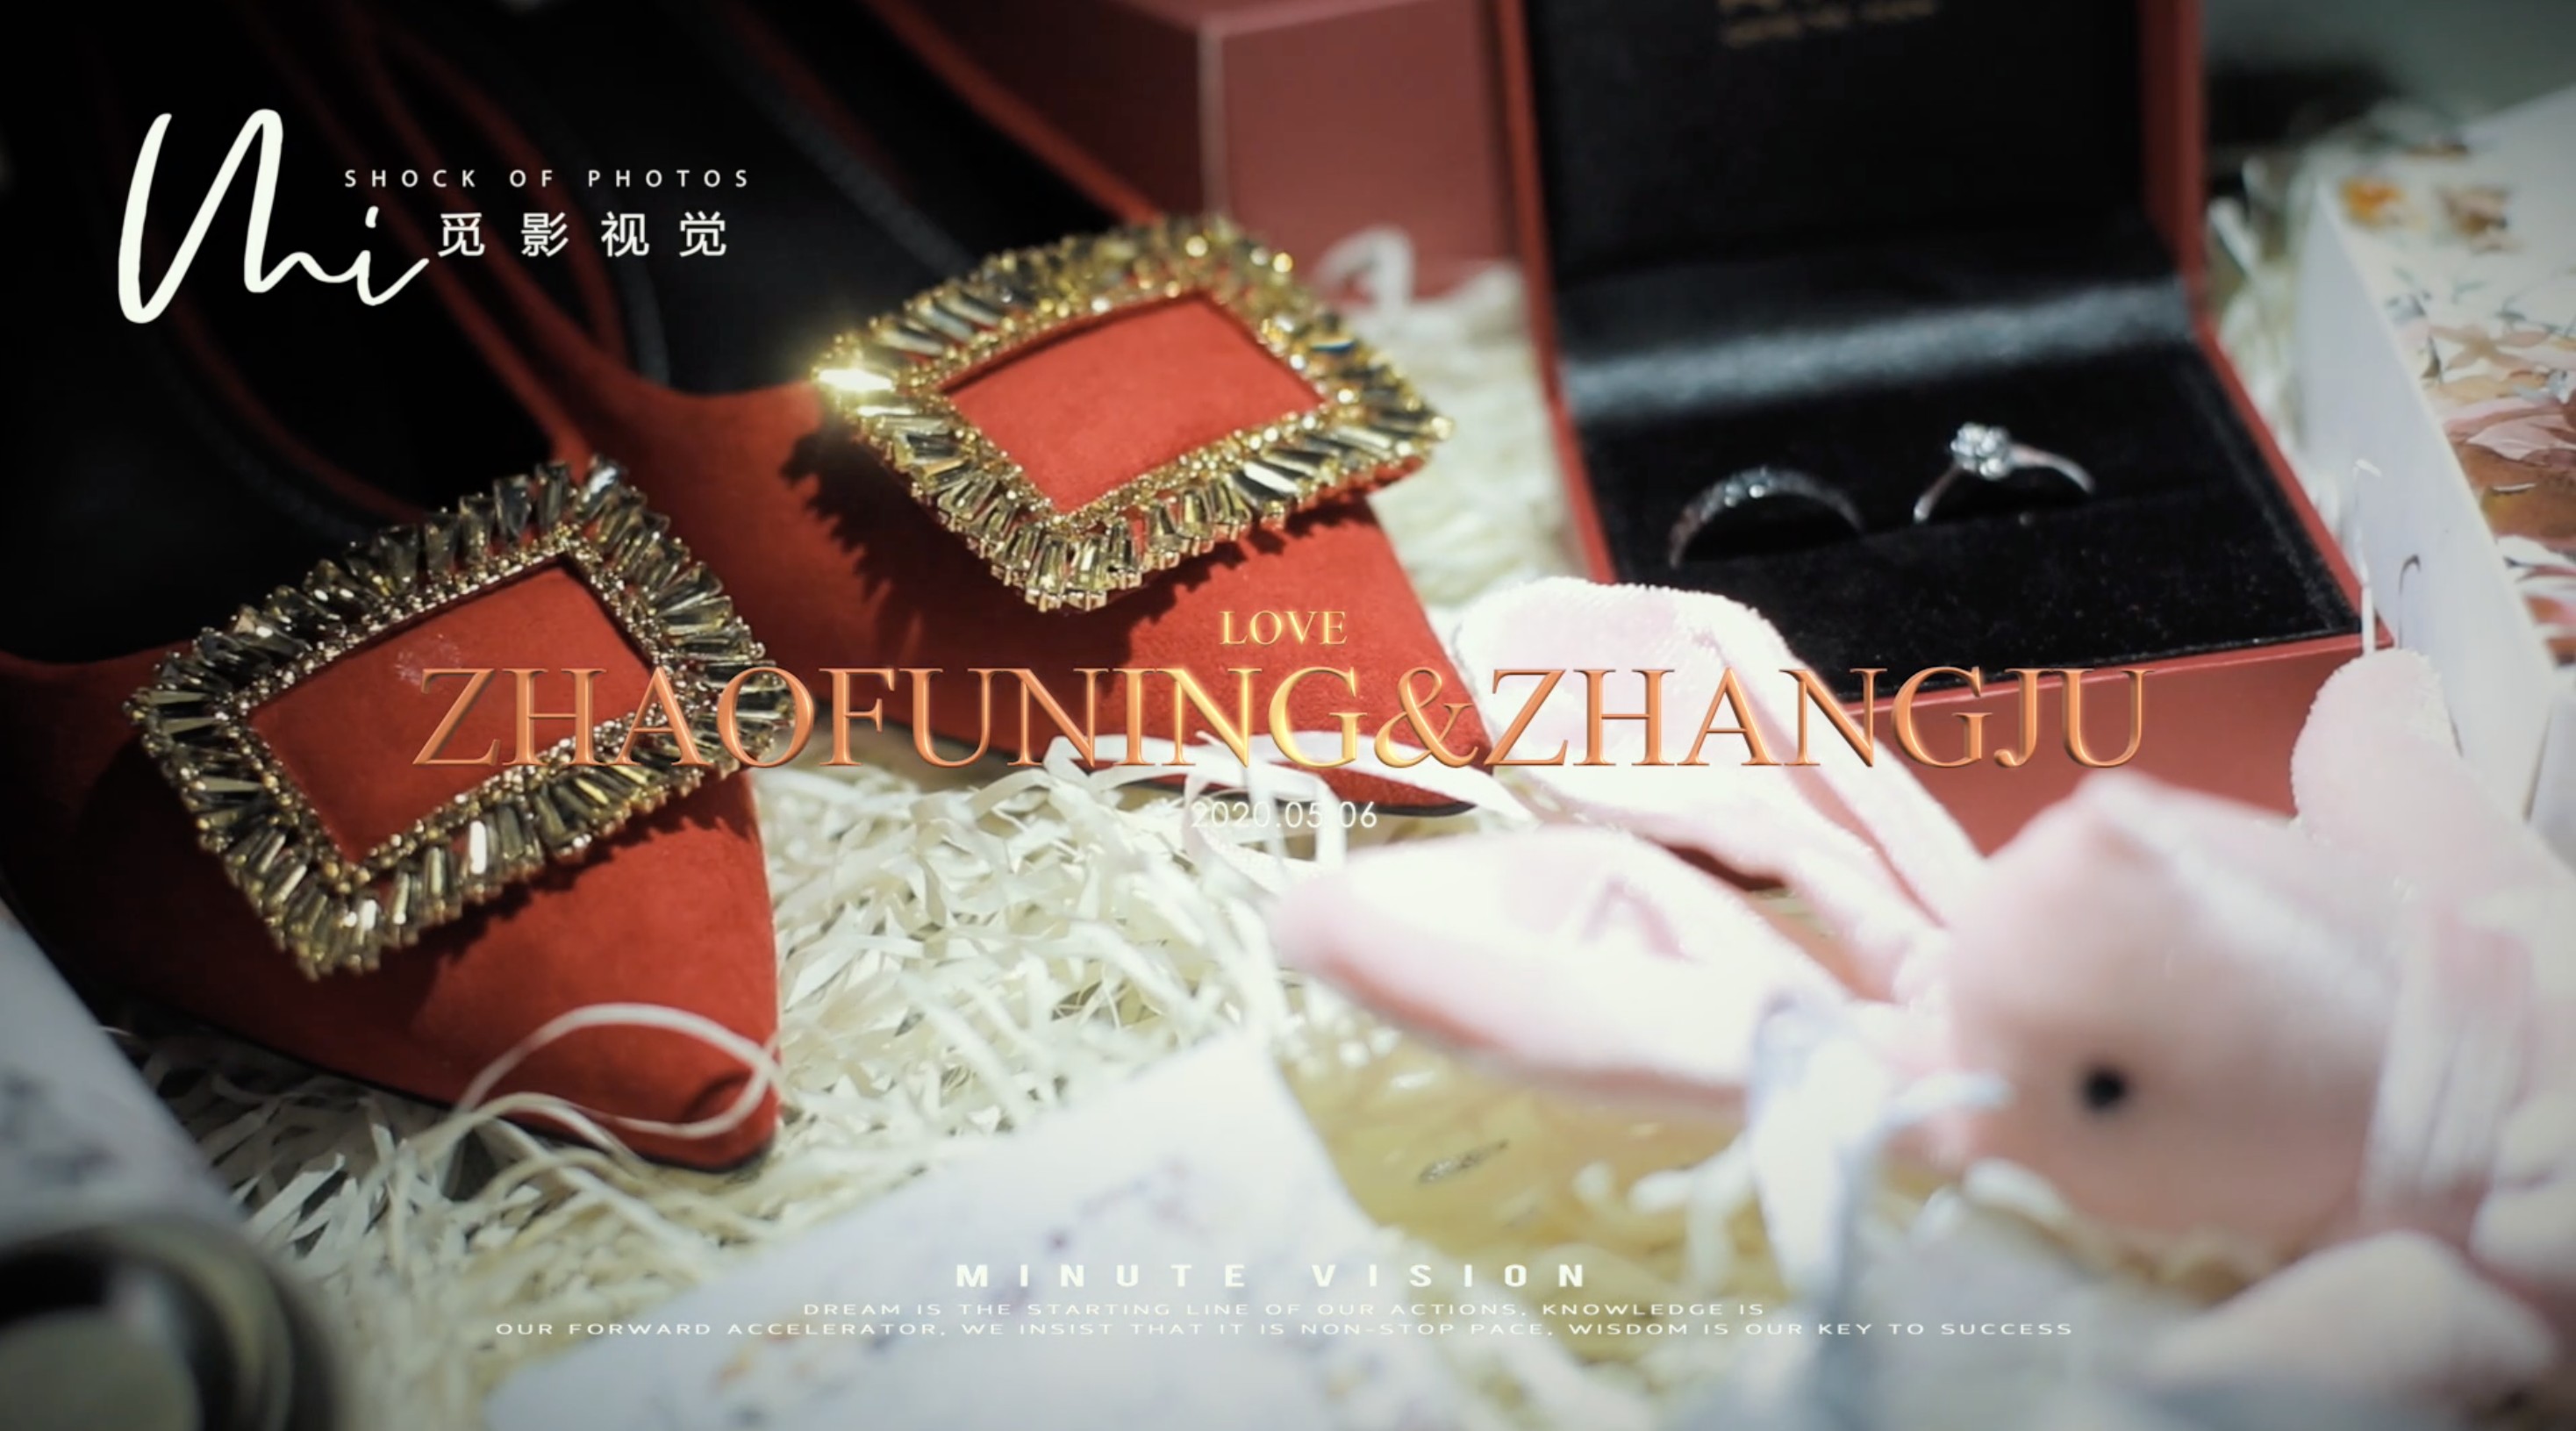 【ZHAO&ZHANG】2020.05.06婚礼席前快剪|唯爱婚礼&觅影视觉出品 